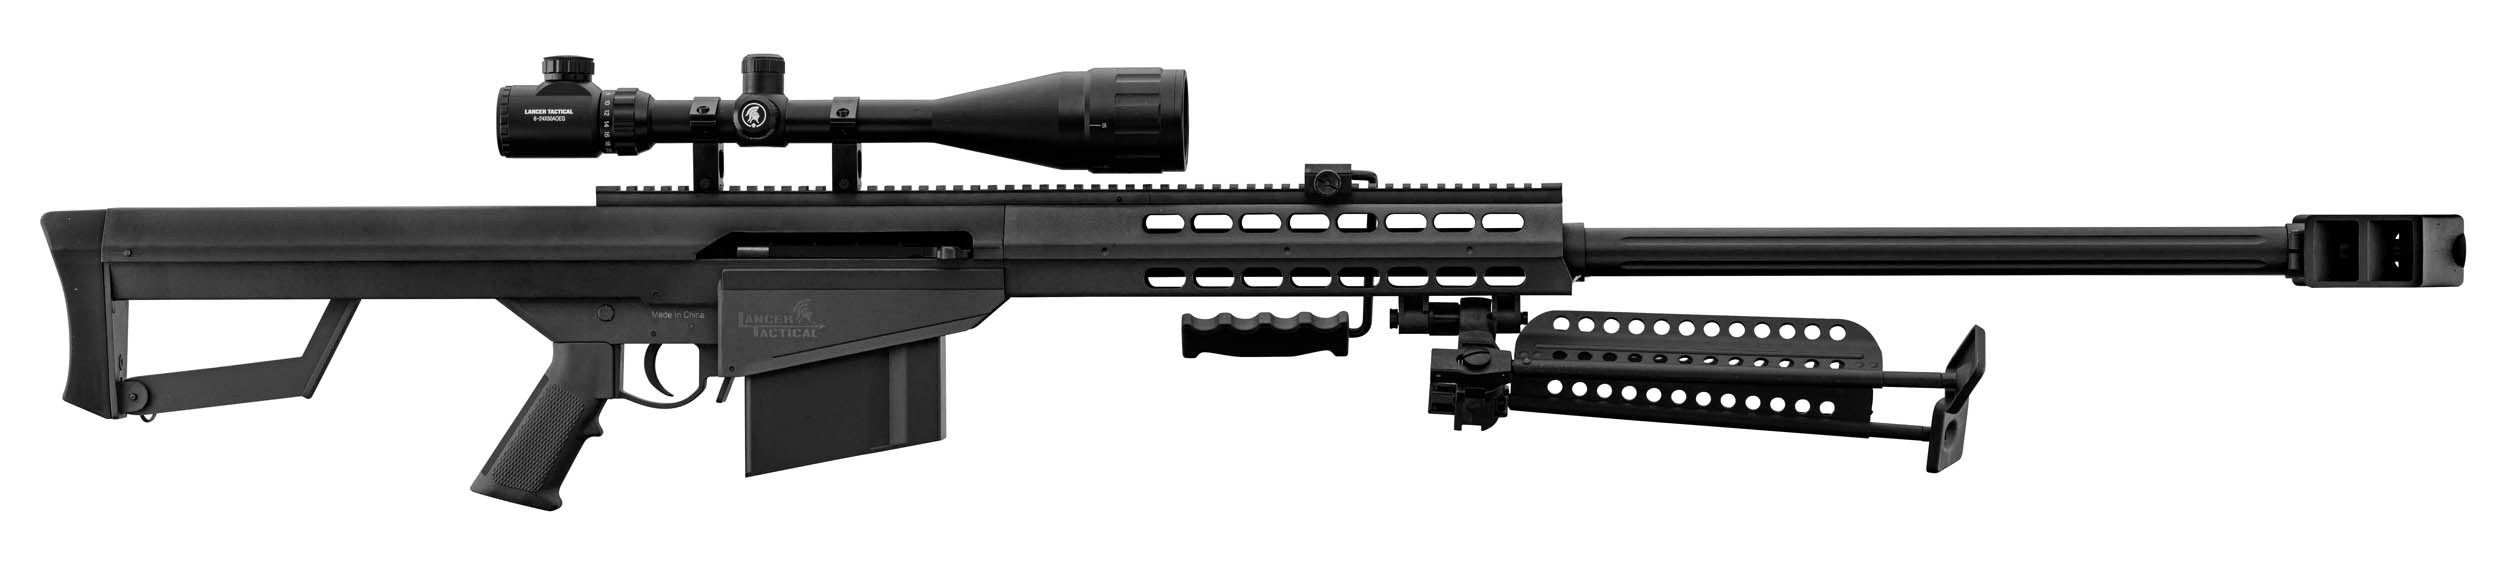 PCKLR3050-10 Pack Sniper LT-20 noir M82 1,5J + lunette + bi-pied + poignée - PCKLR3050